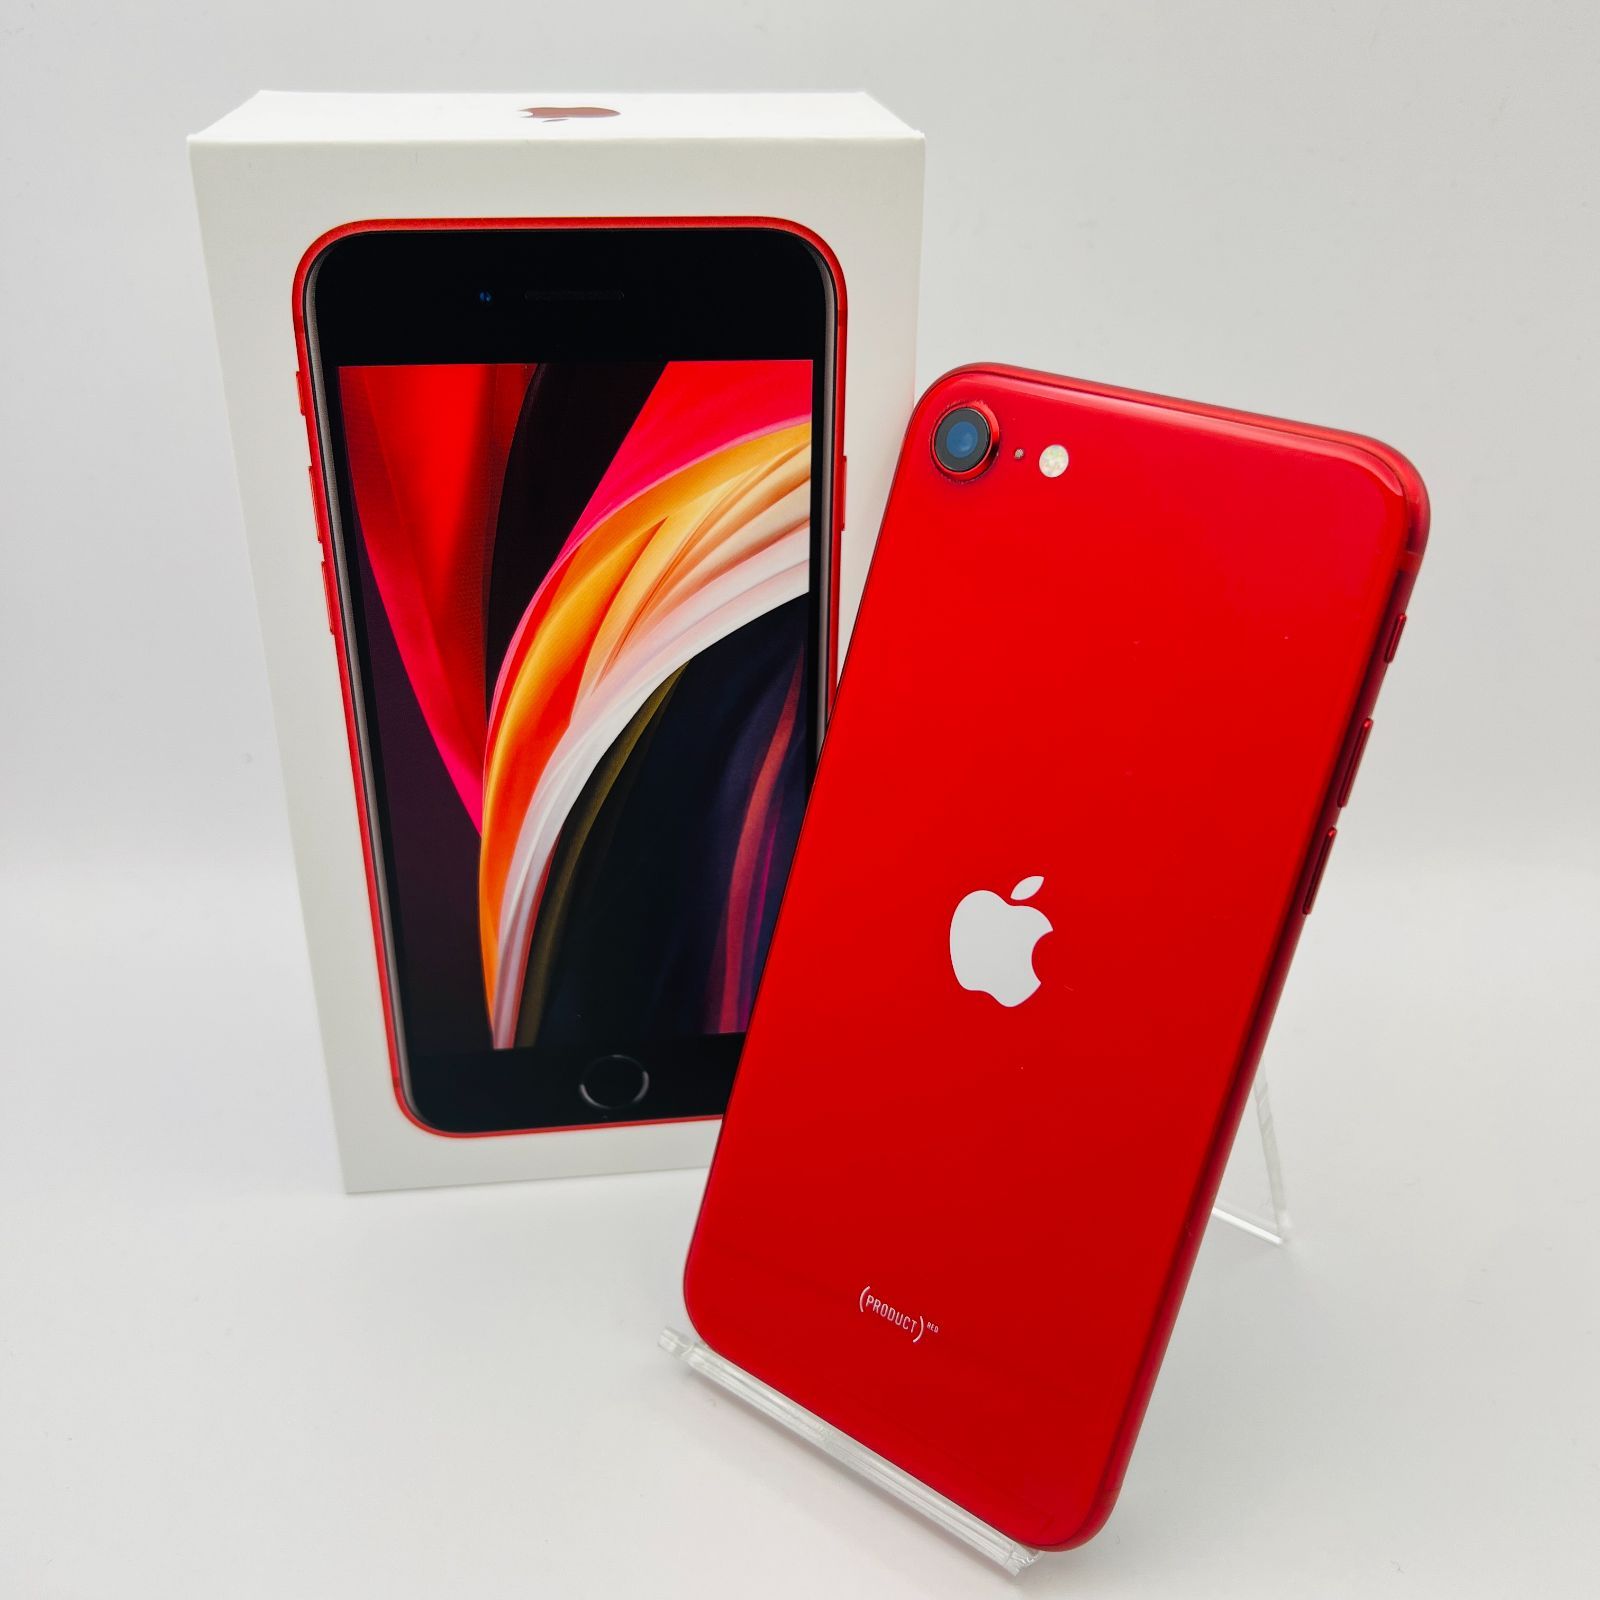 レッド付属品iPhone SE2 64MB red 新品未使用品 MX9U2J/A 